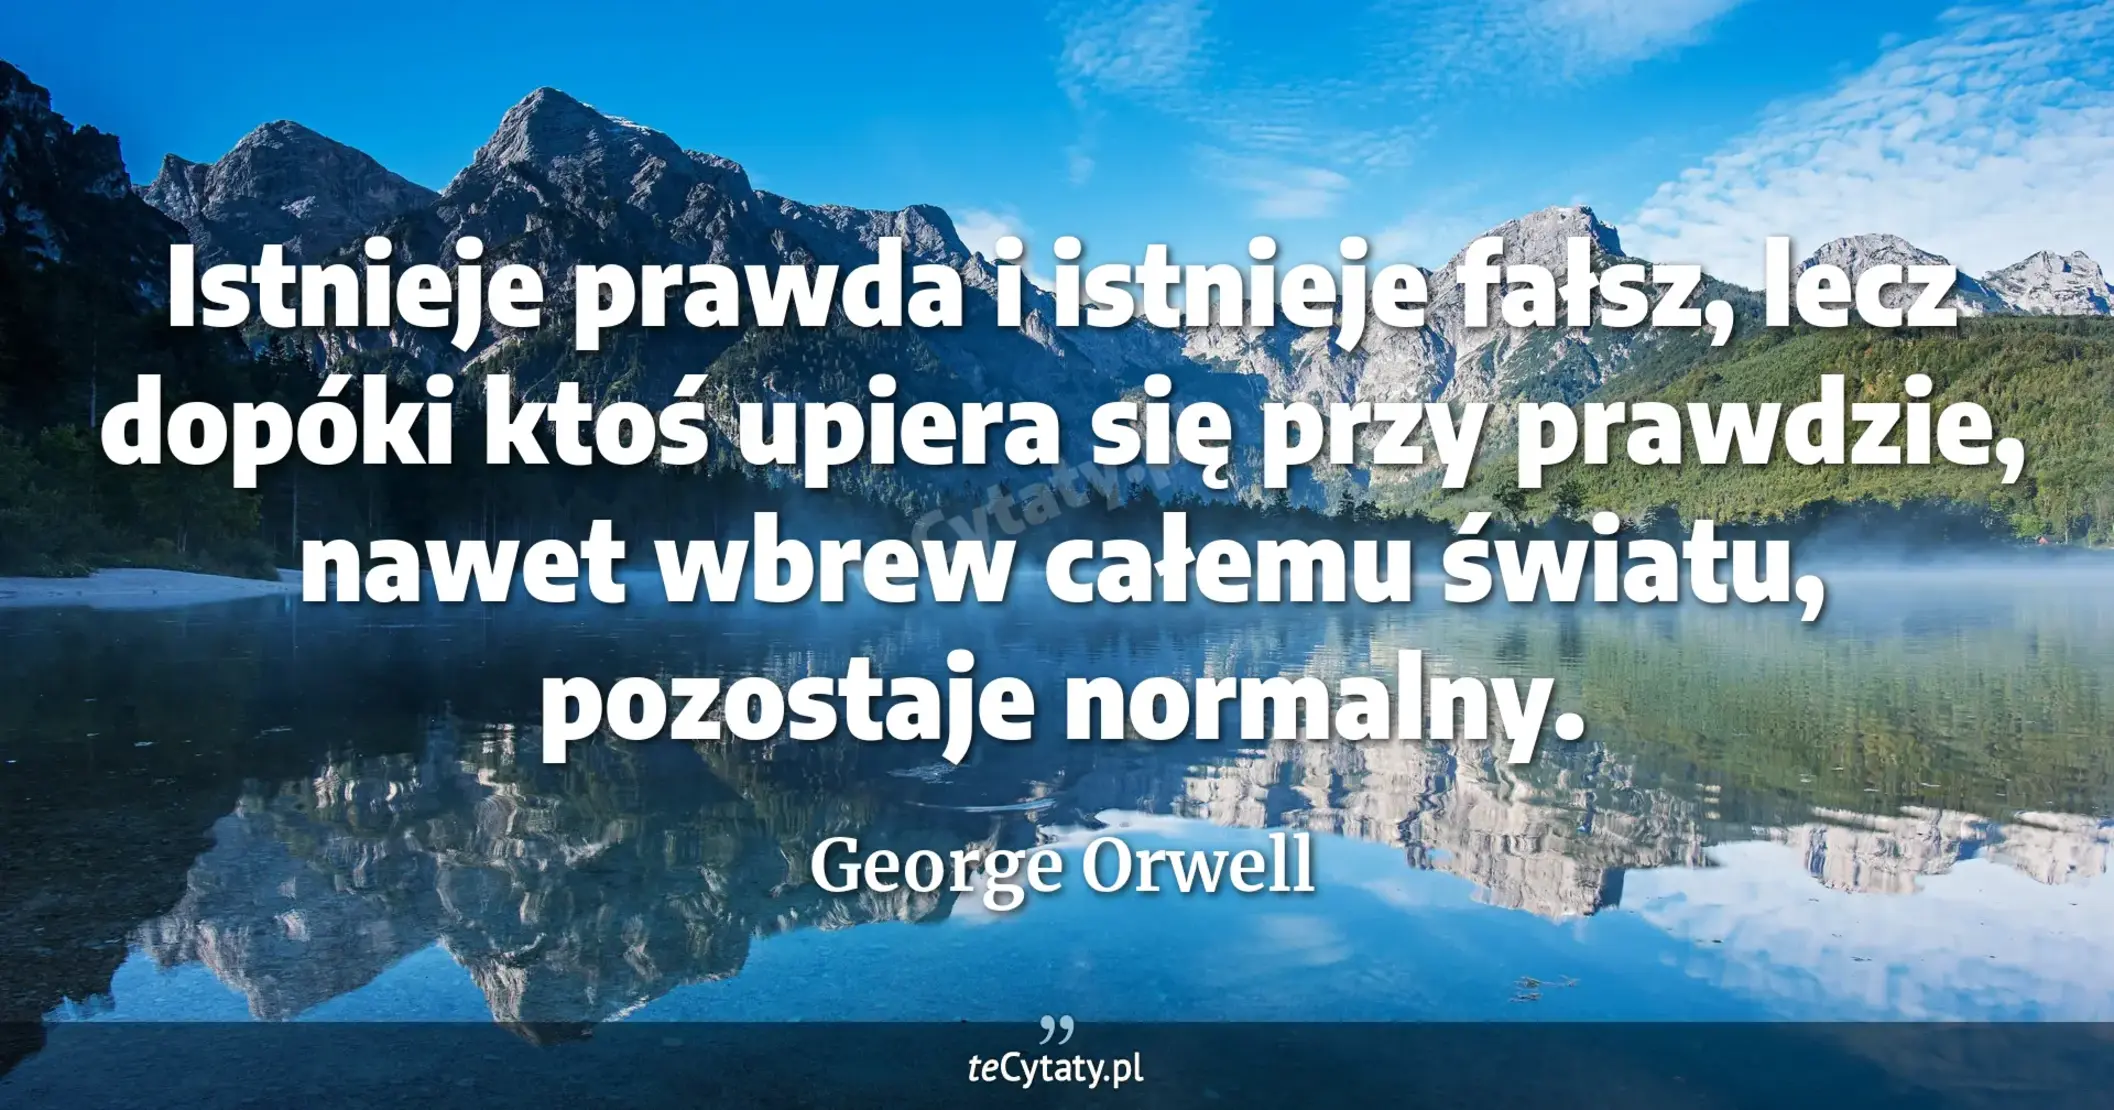 Istnieje prawda i istnieje fałsz, lecz dopóki ktoś upiera się przy prawdzie, nawet wbrew całemu światu, pozostaje normalny. - George Orwell